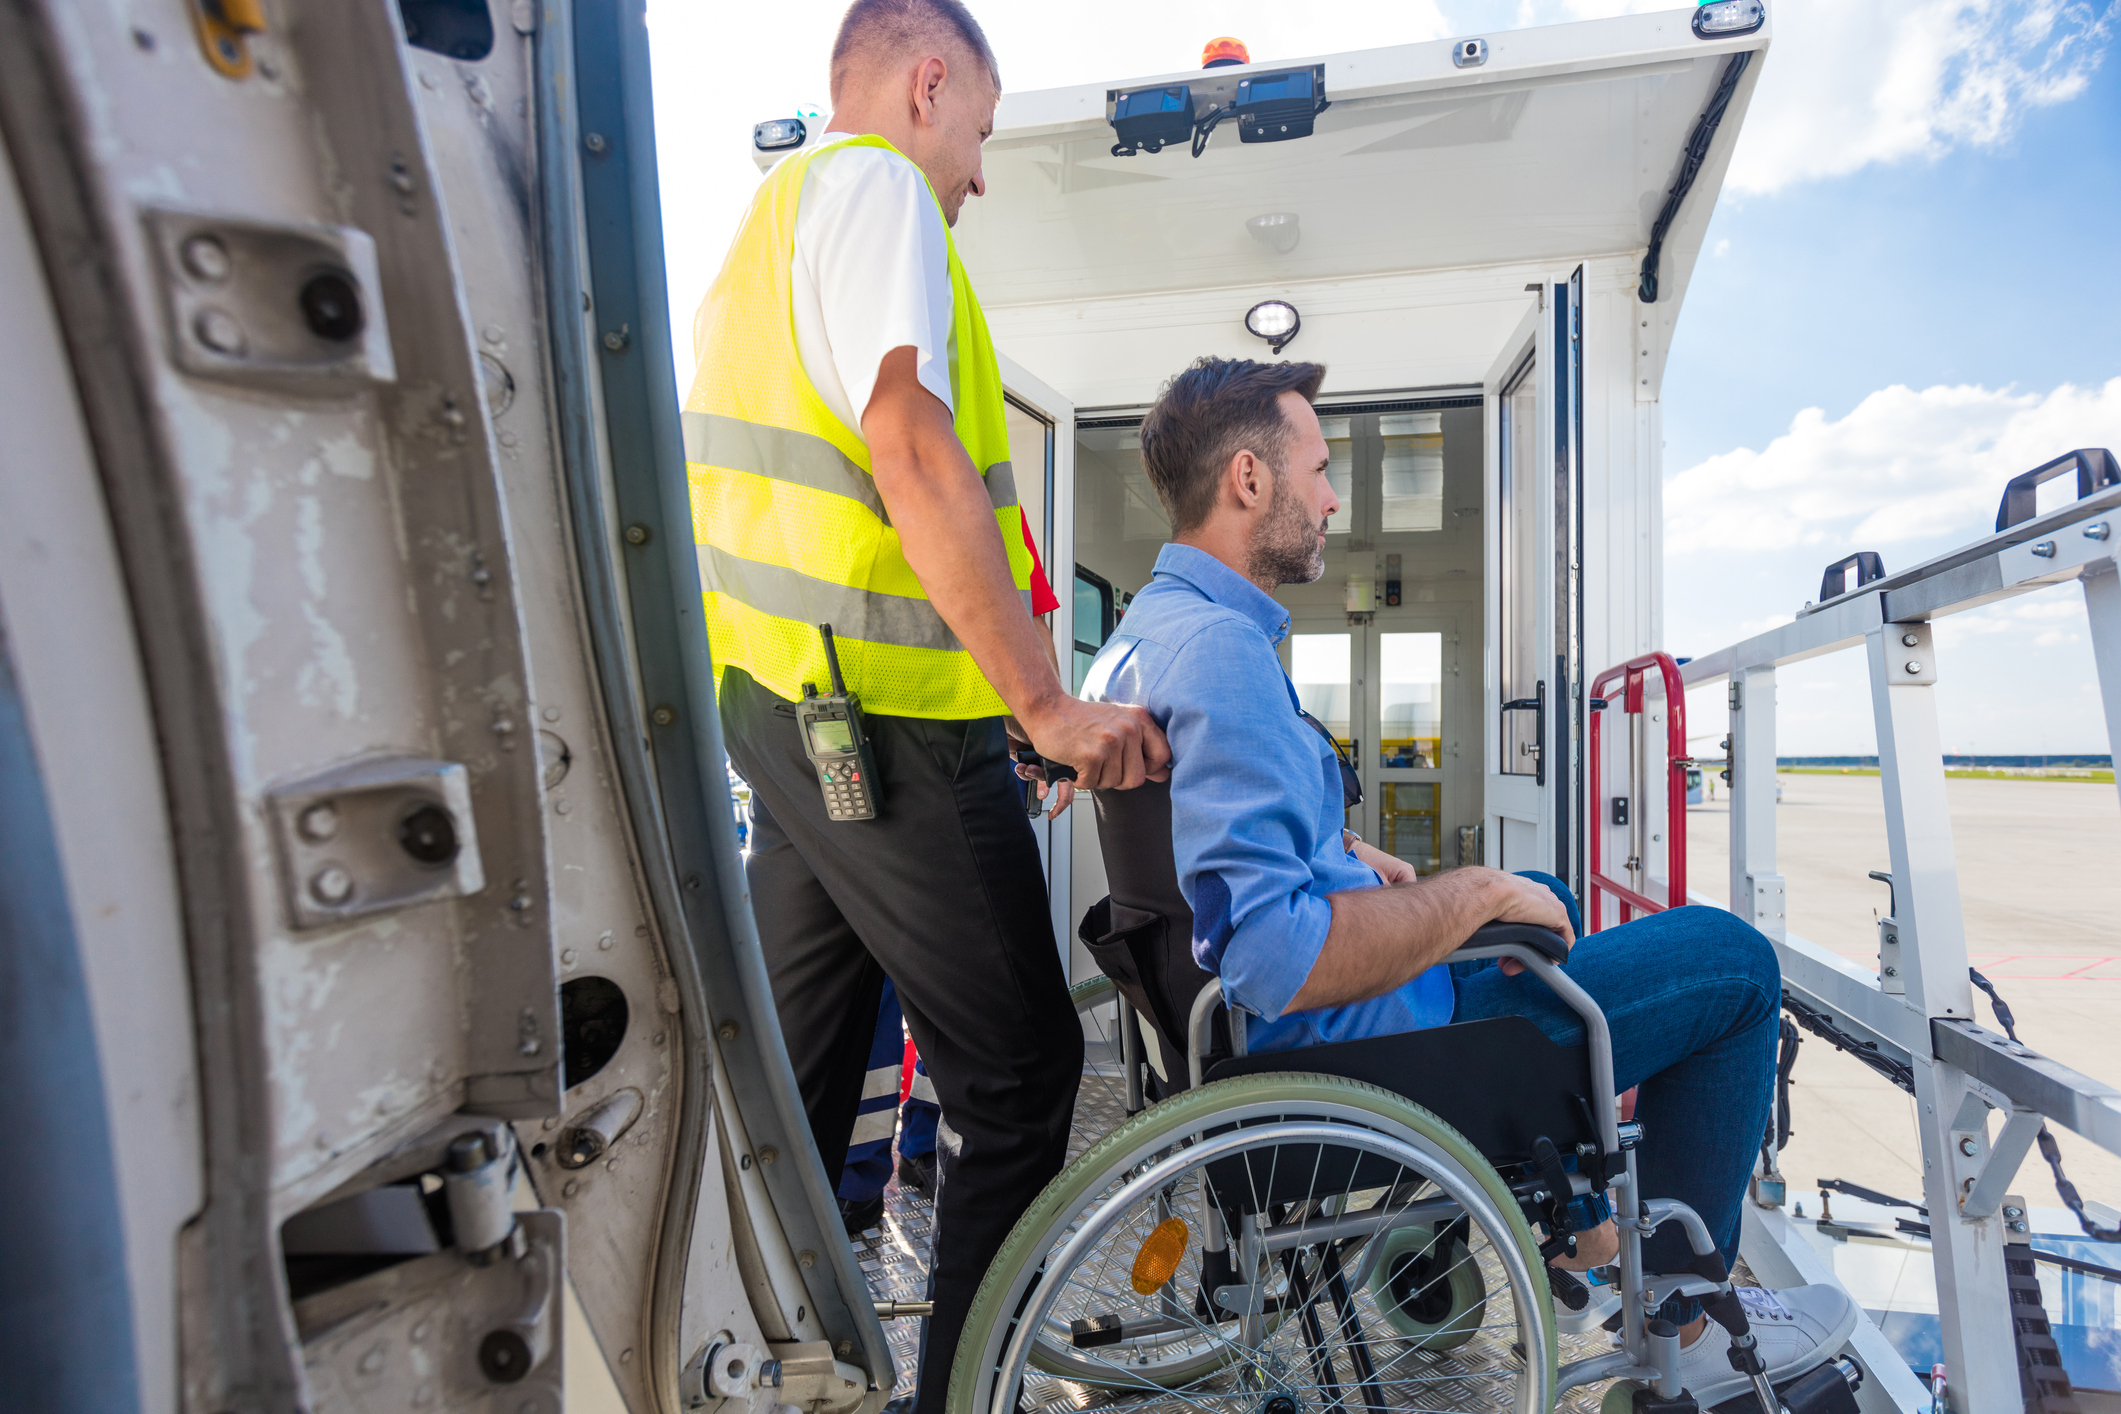 En mand i kørestol bliver skubbet af en ansat i et flyselskab; man kan se flydøren i forgrunden og landgangen i baggrunden.